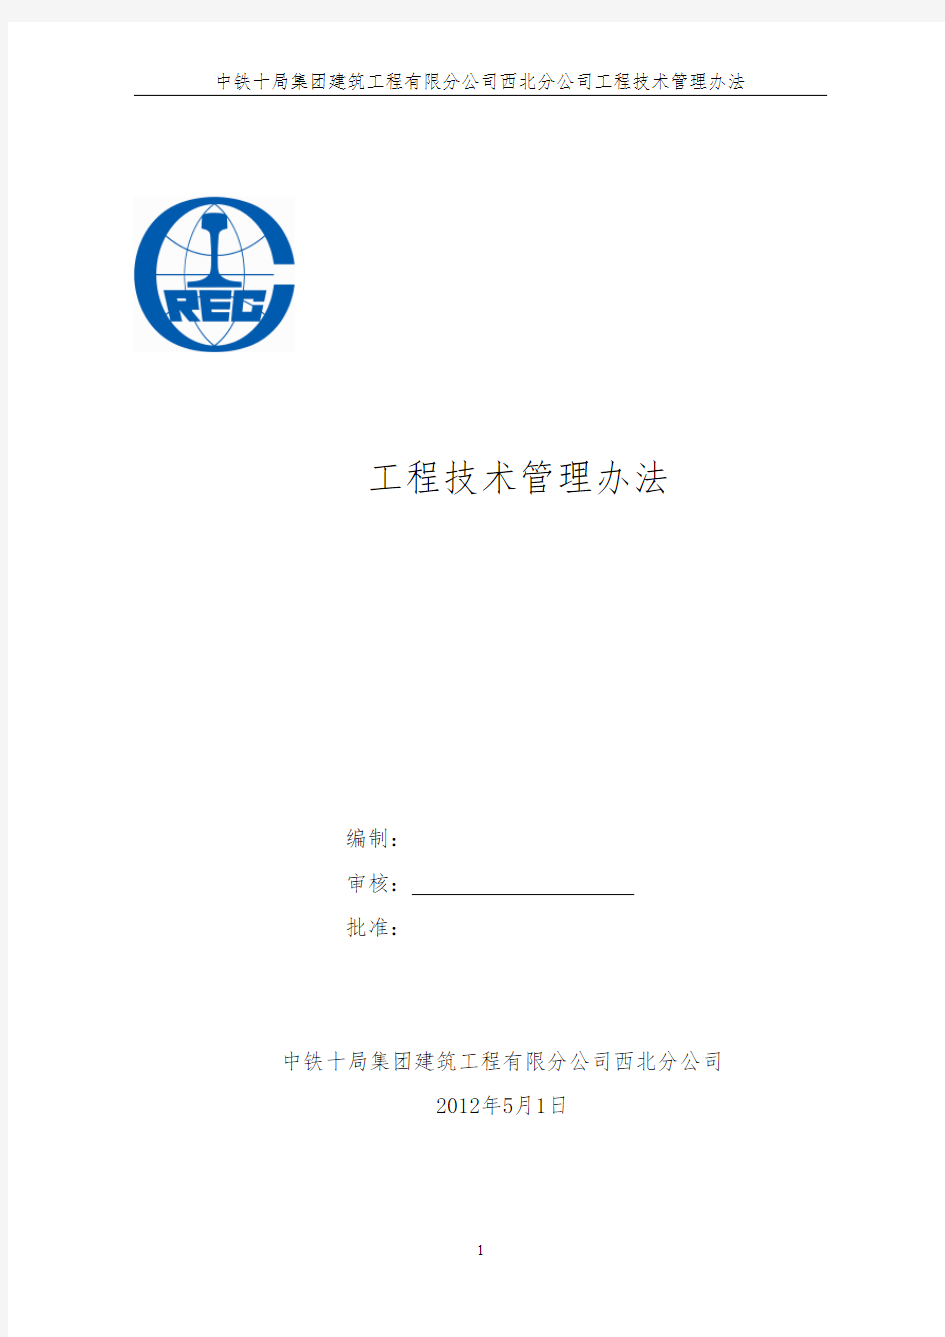 中铁十局集团建筑工程有限公司西北项目部技术管理办法 (修复的)